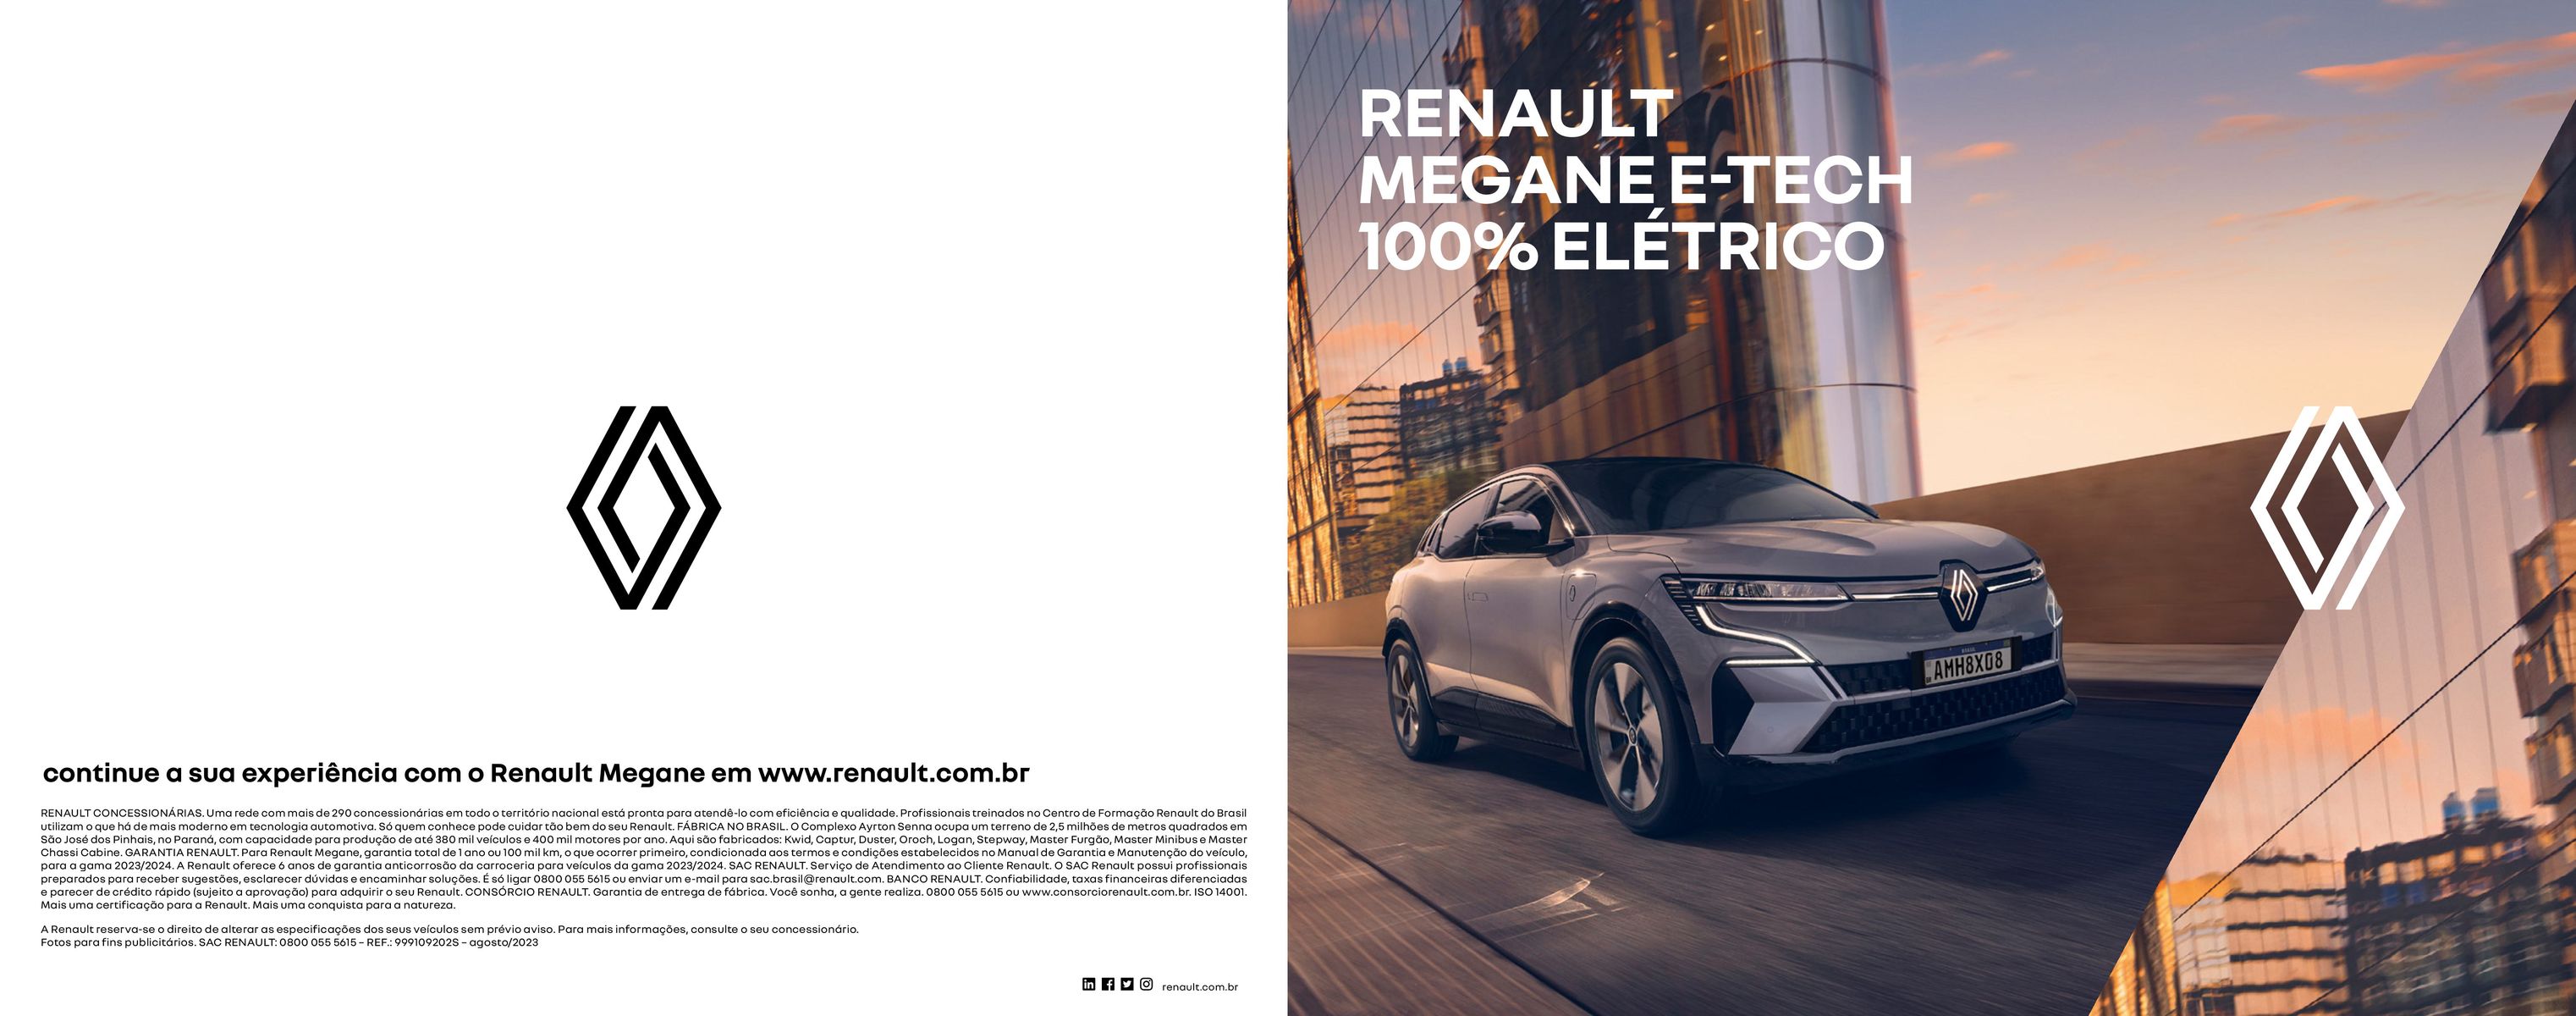 Renault Megane - Garantia e Condições Especiais